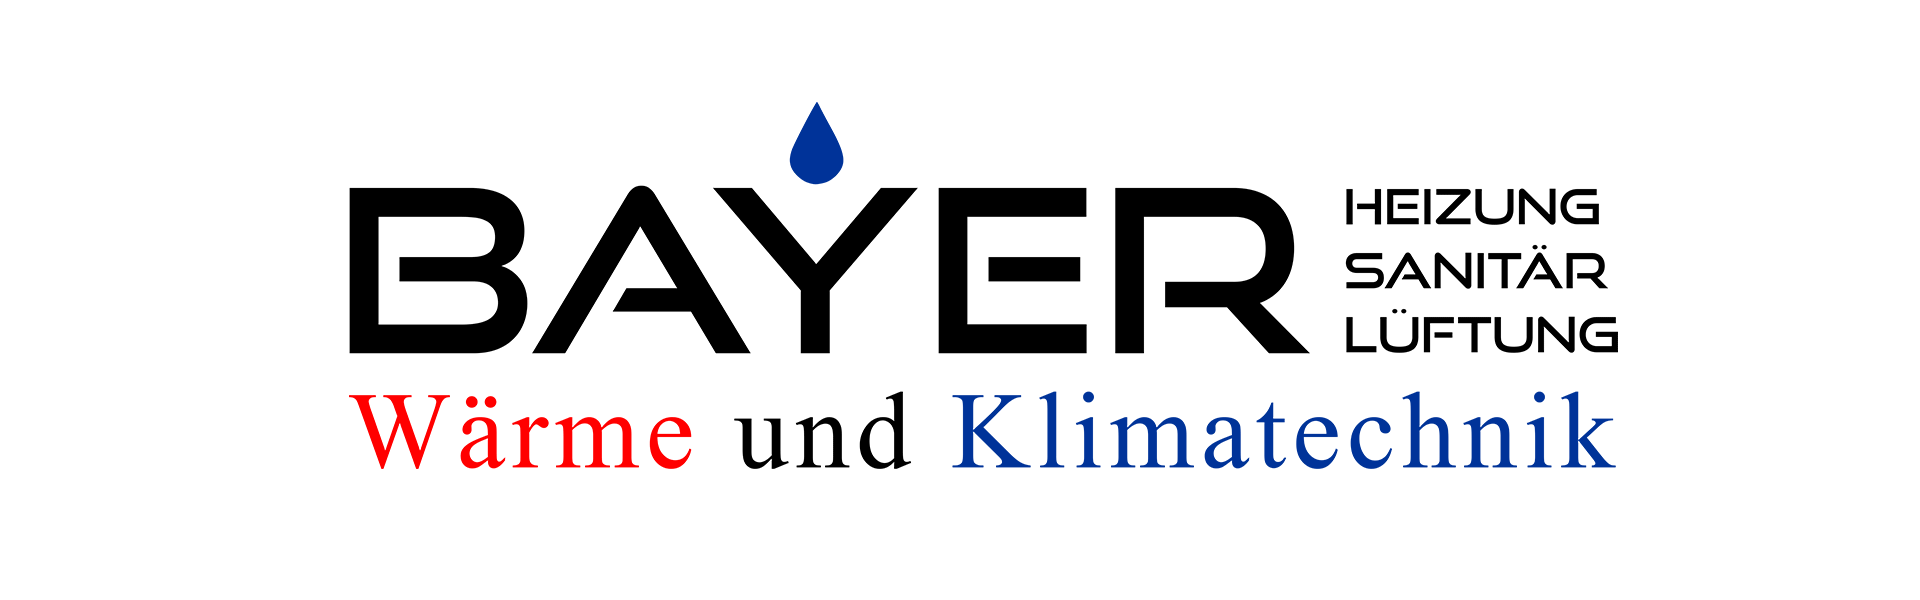 Bayer Wärme und Klimatechnik in Freiensteinau